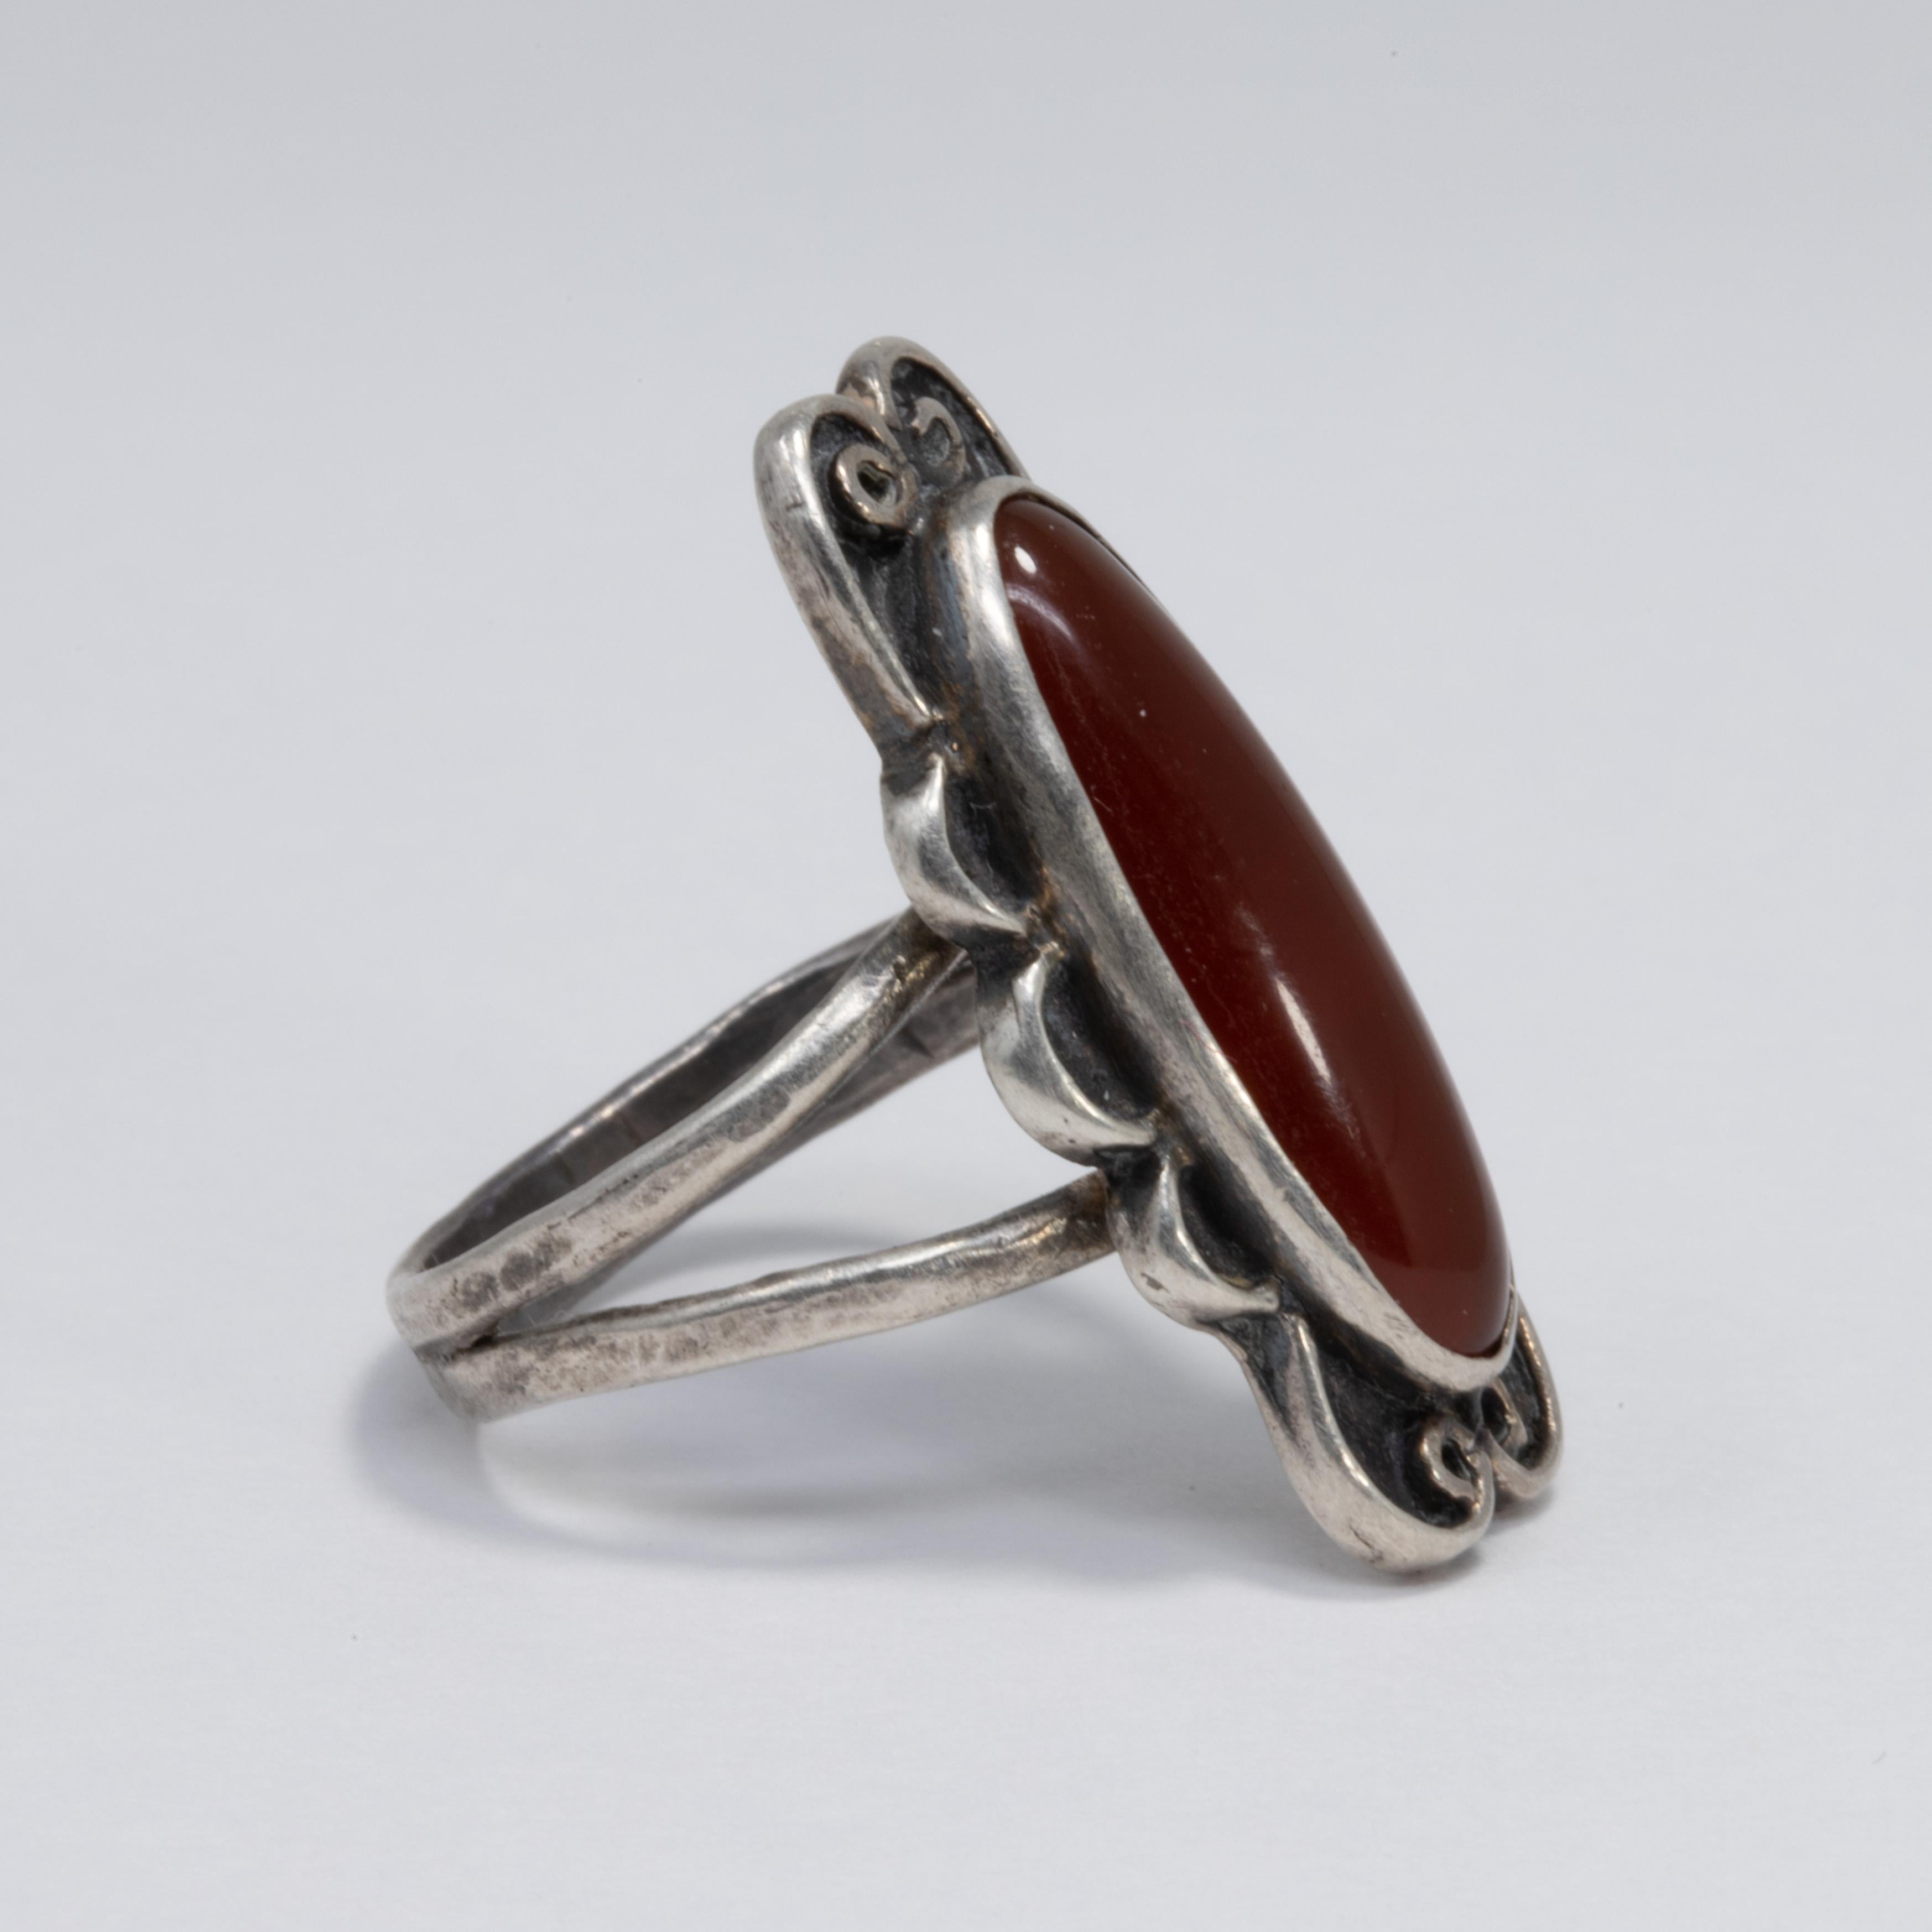 Ein exquisiter Jugendstil-Ring mit einem Karneol-Cabochon als Herzstück. Dekorative Lünette und Band aus Sterlingsilber.

Ringgröße US 7.75

Zeichen / Punzierungen / etc: Sterling